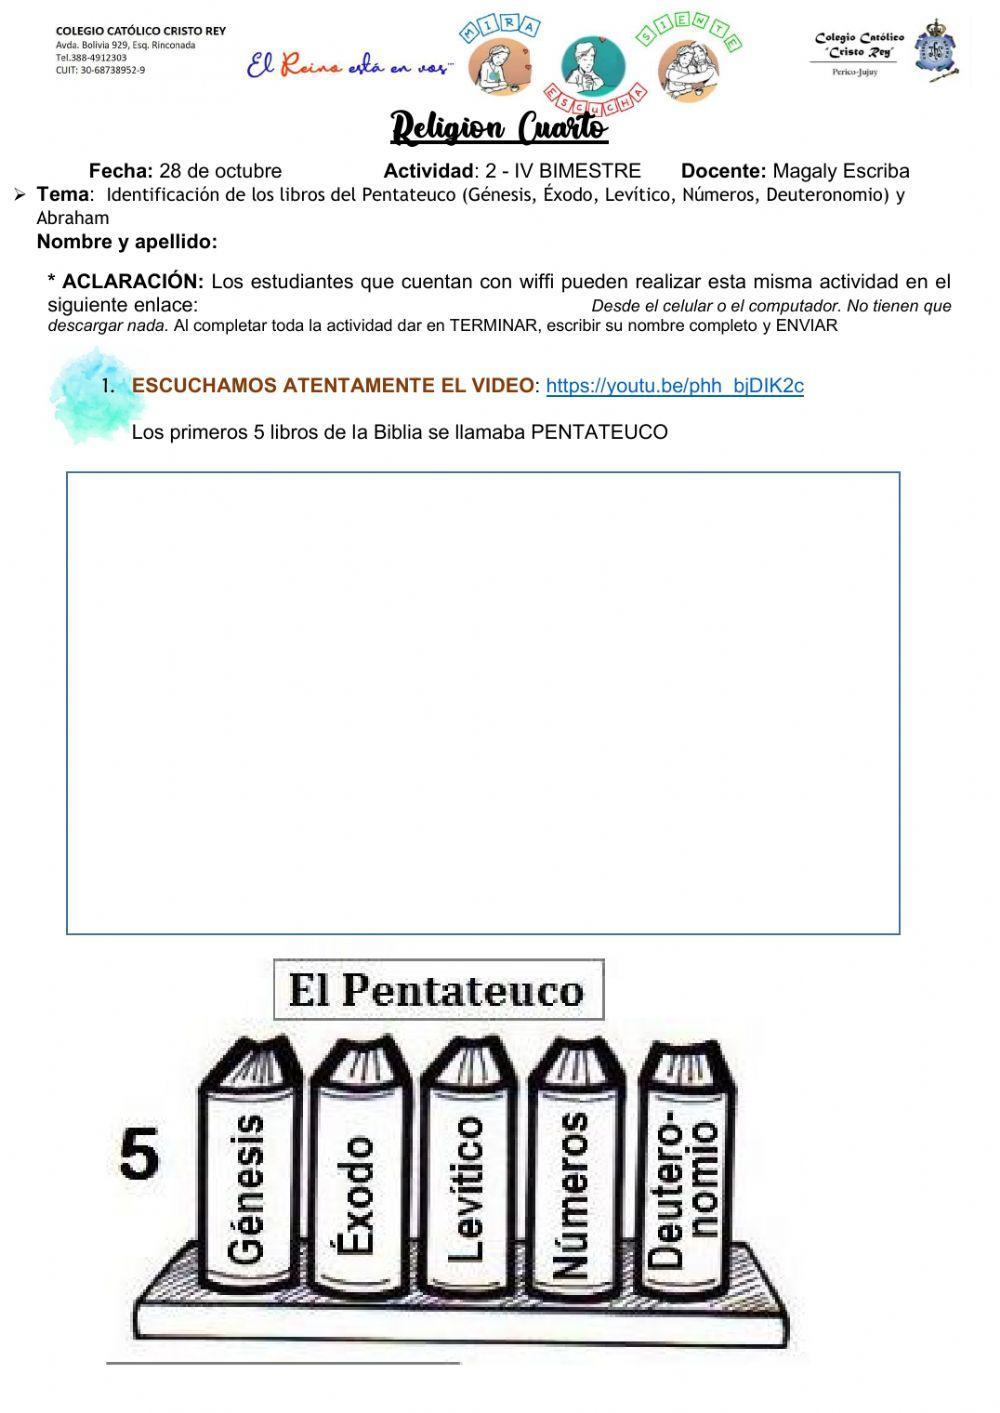 2 - 4to A - Formación Religiosa Identificación de los libros del Pentateuco y Abraham.pdf